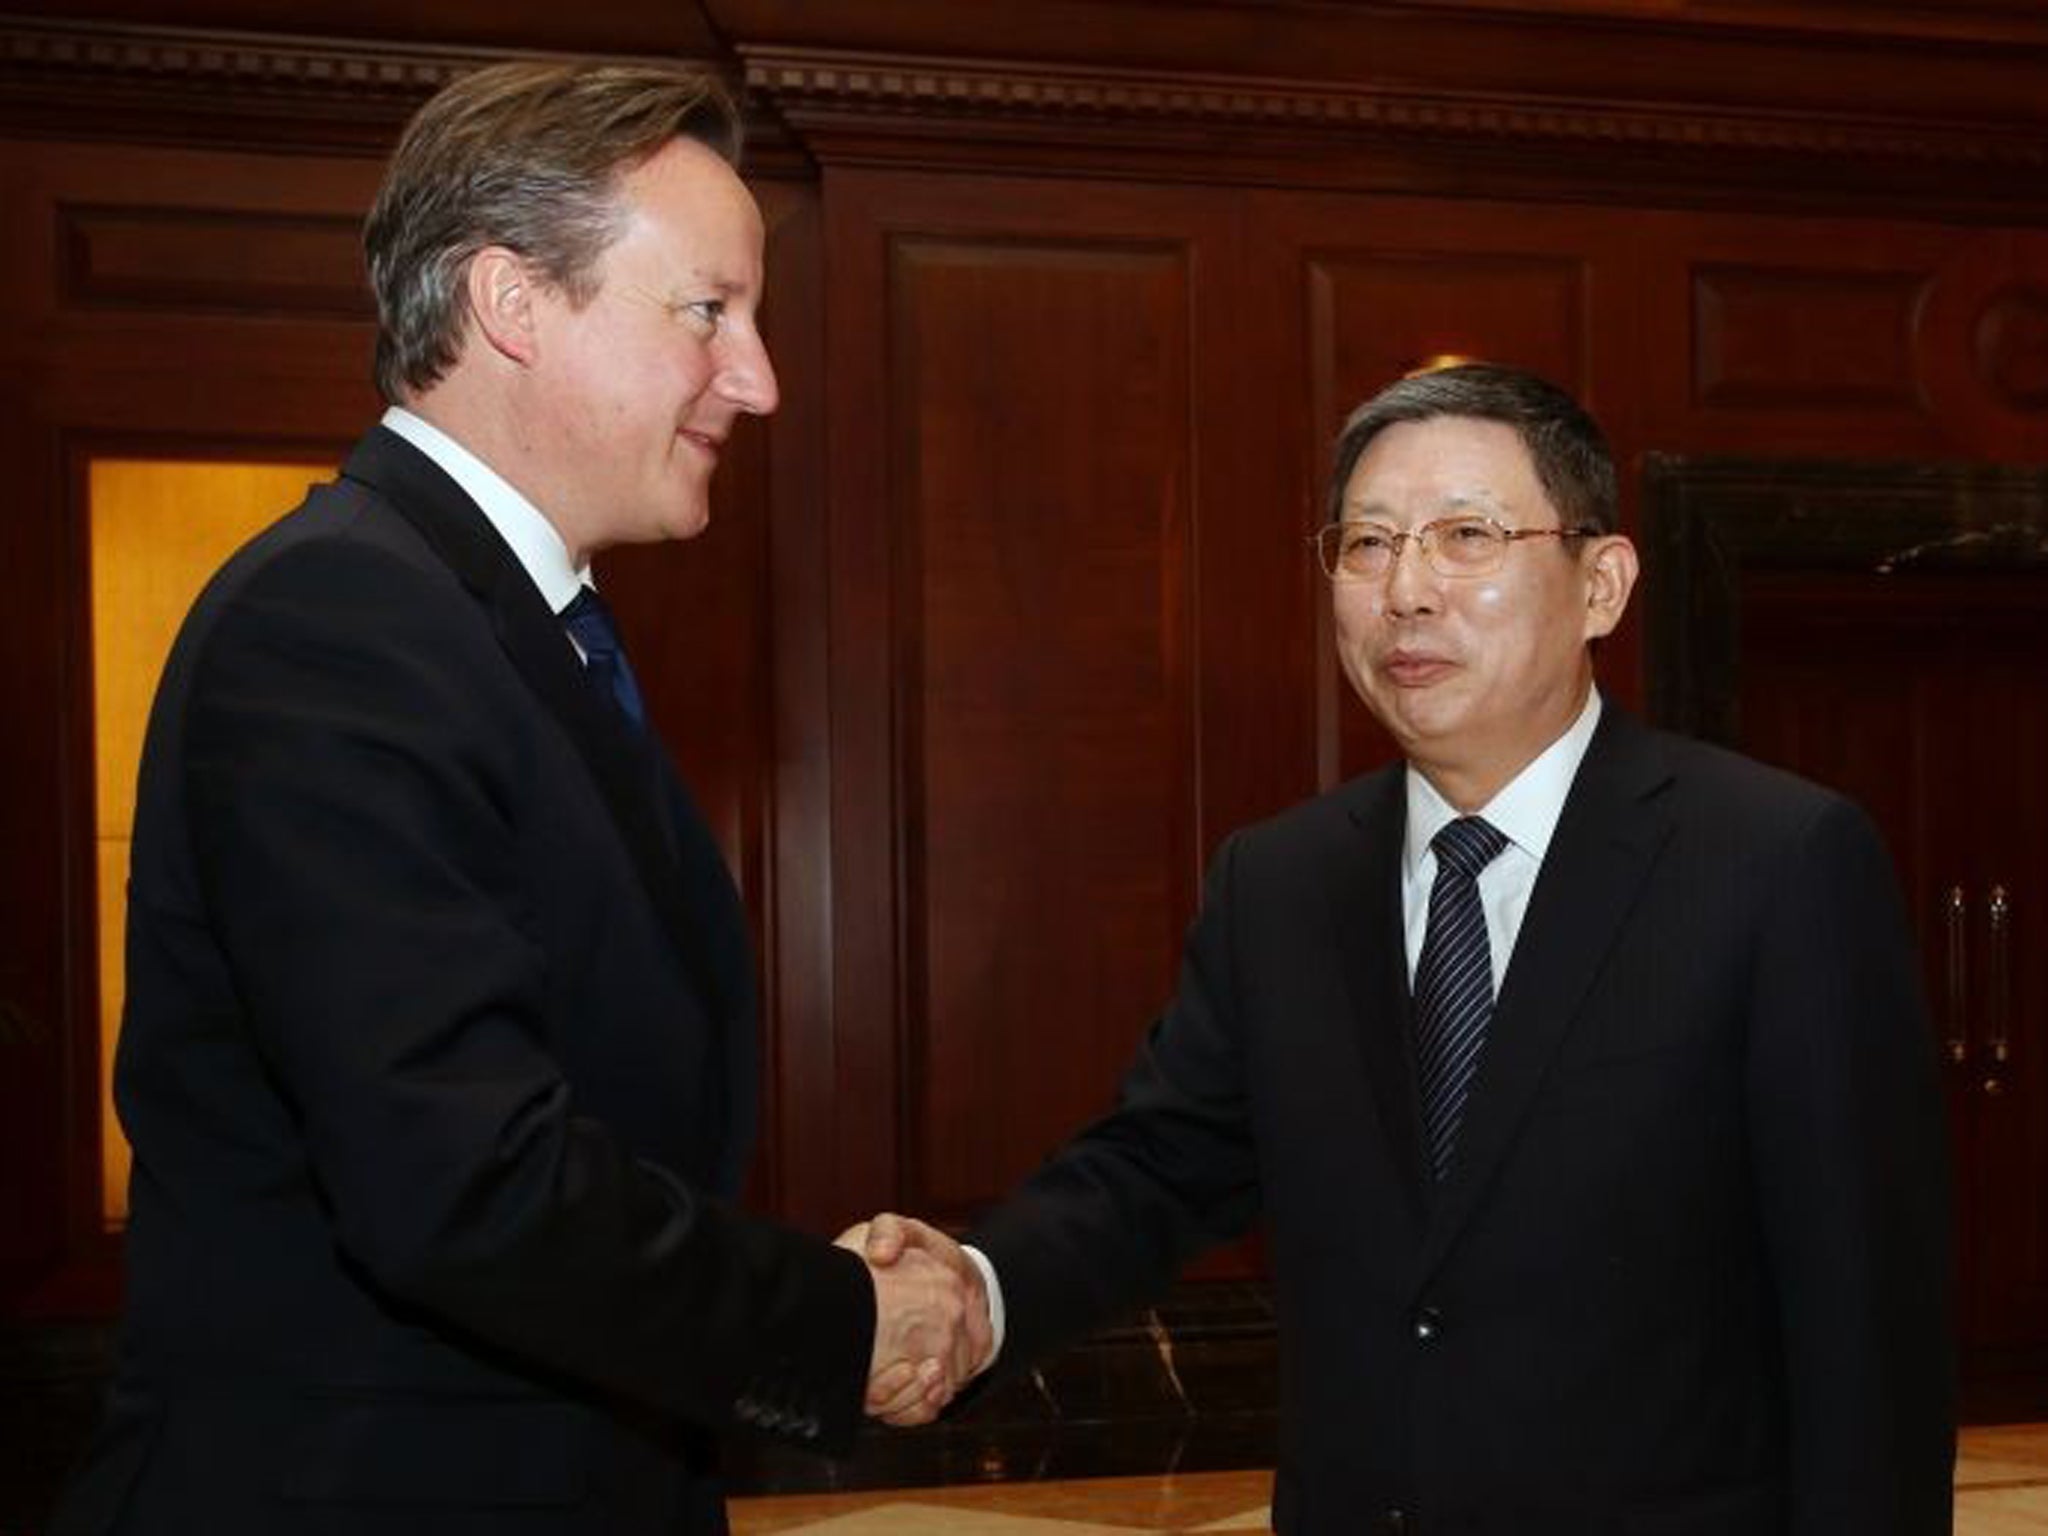 Shanghai Mayor Yang Xiong greets David Cameron